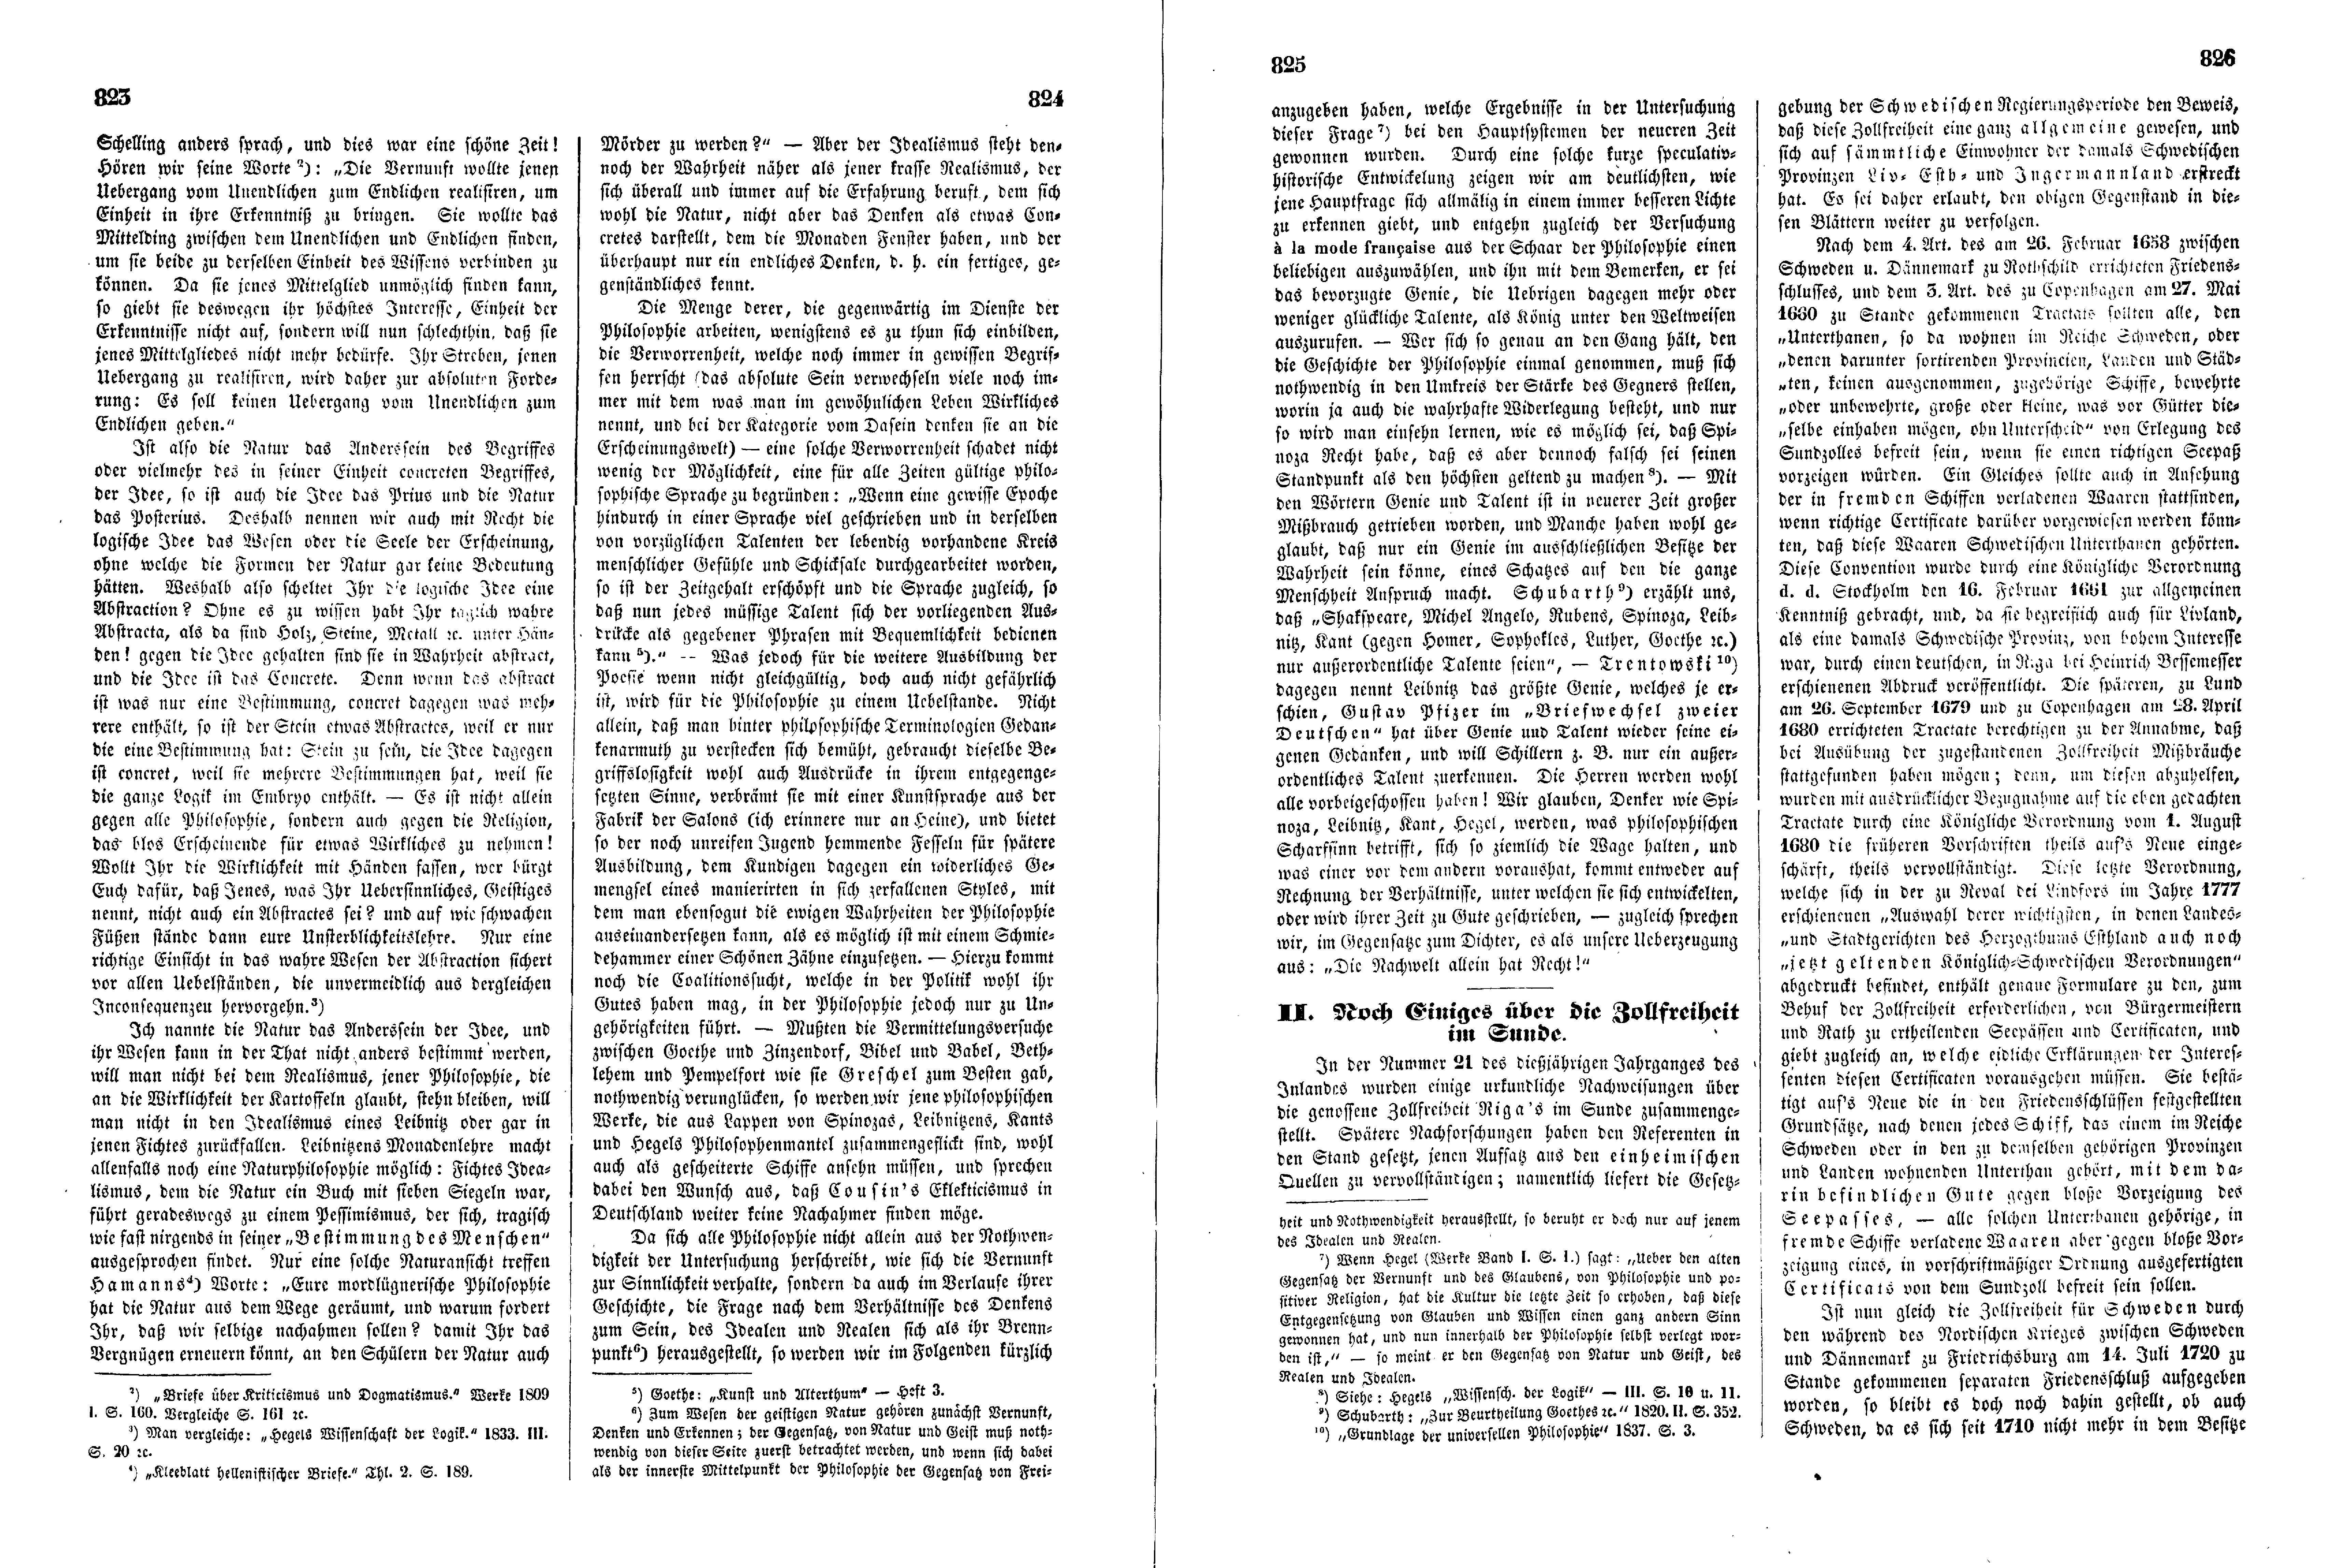 Der Wendepunkt in der neuesten deutschen Philosophie [2] (1845) | 2. (823-826) Main body of text